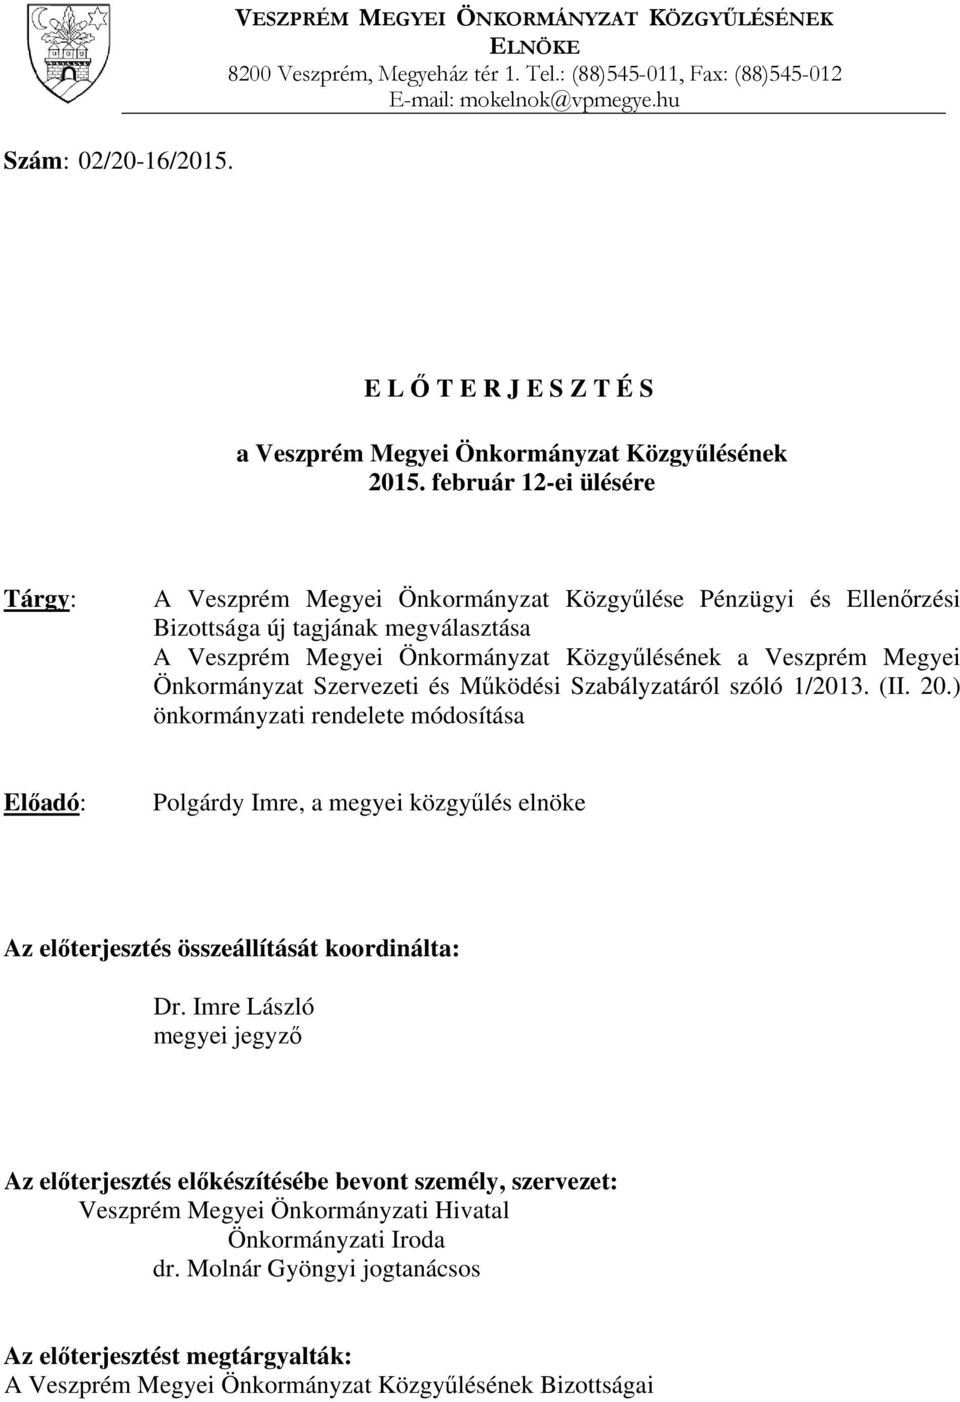 február 12-ei ülésére Tárgy: A Veszprém Megyei Önkormányzat Közgyűlése Pénzügyi és Ellenőrzési Bizottsága új tagjának megválasztása A Veszprém Megyei Önkormányzat Közgyűlésének a Veszprém Megyei